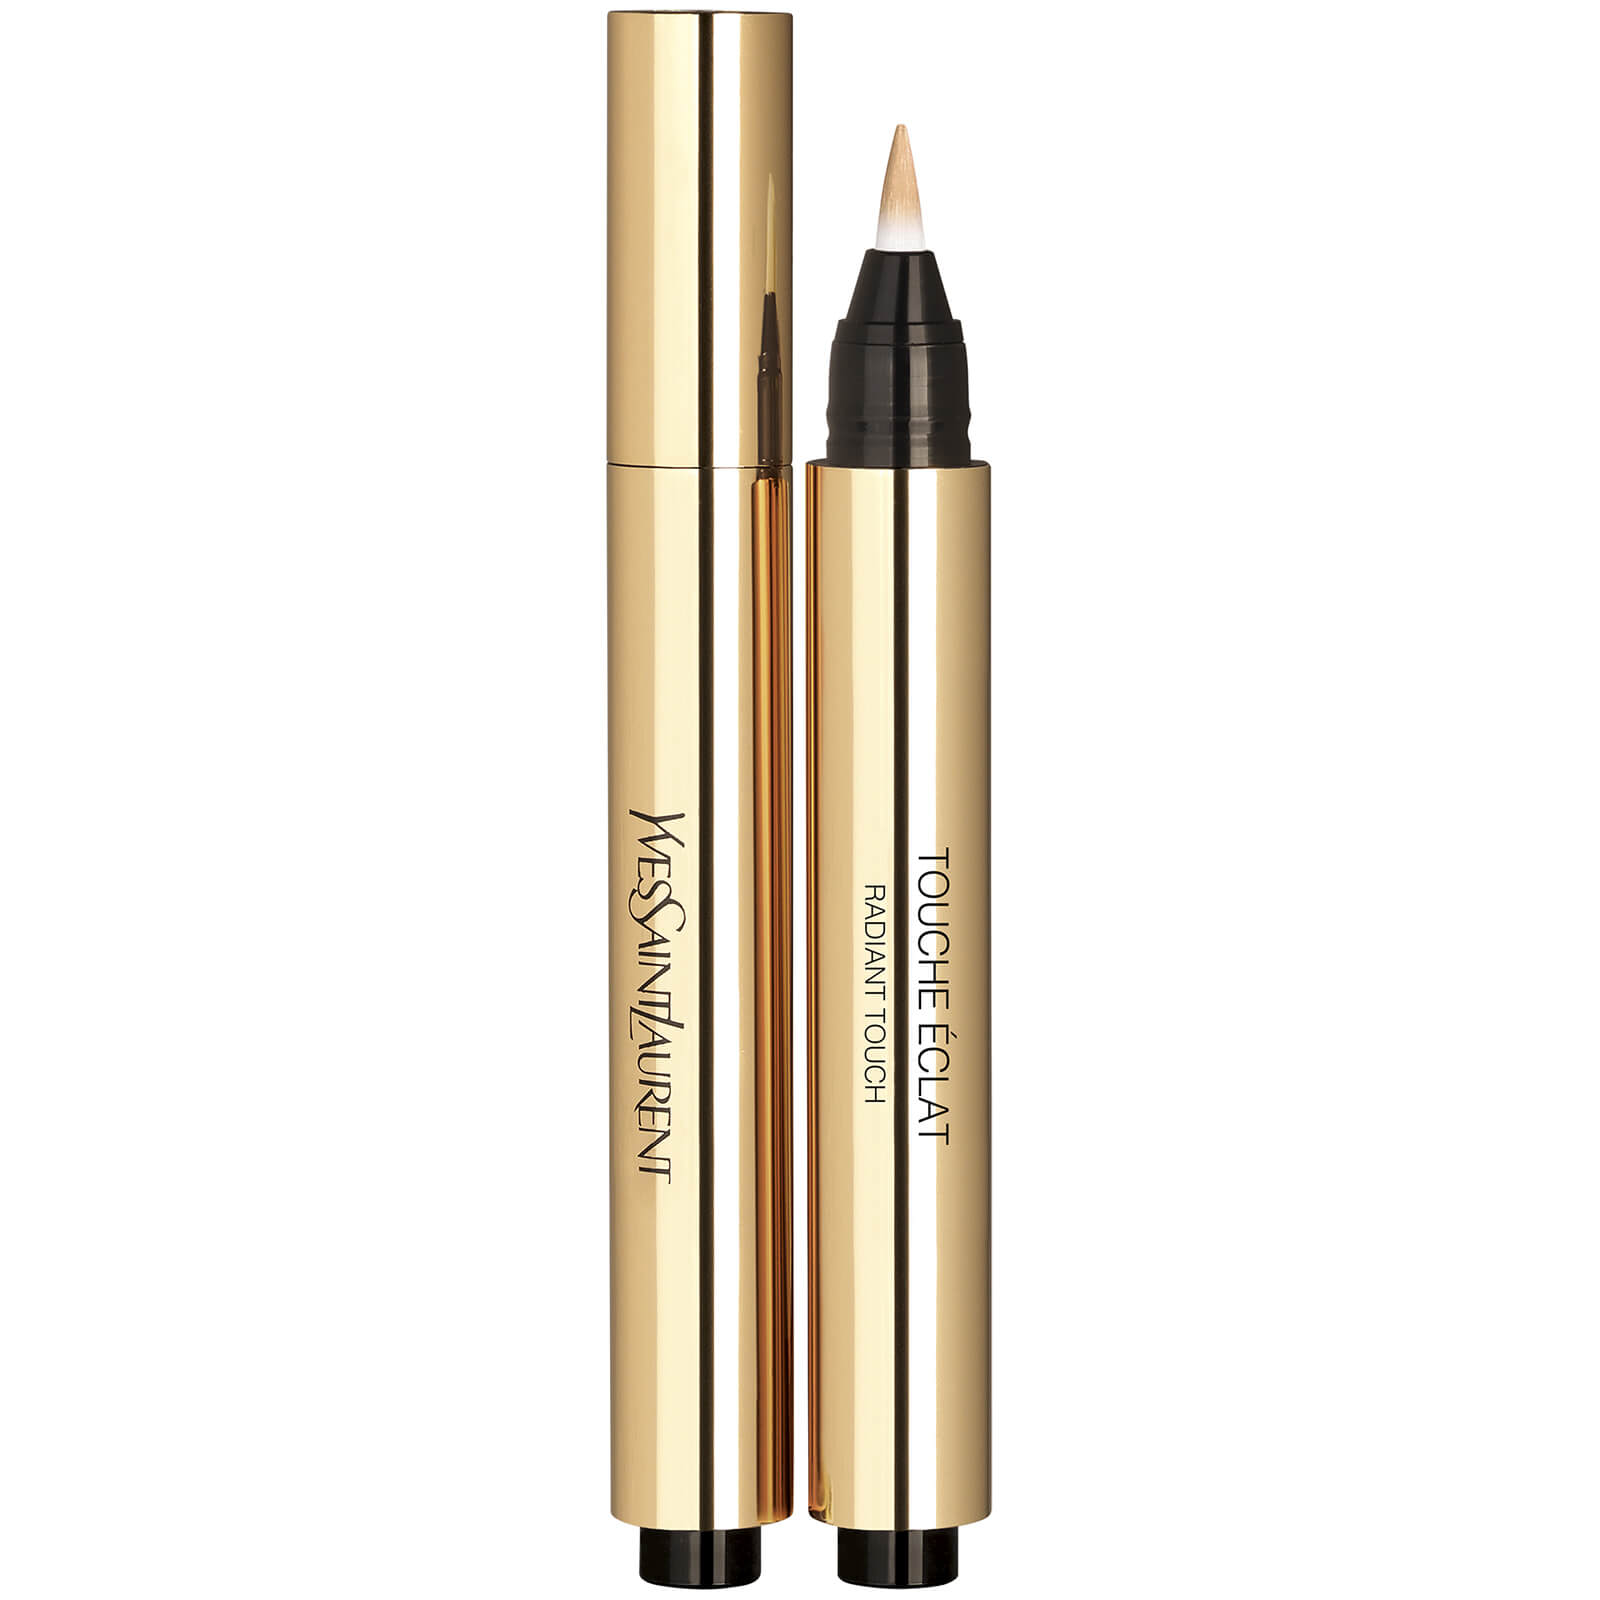 Yves Saint Laurent Touche Eclat Highlighter Pen 2.5ml (Various Shades) - 1.5 Luminous Silk